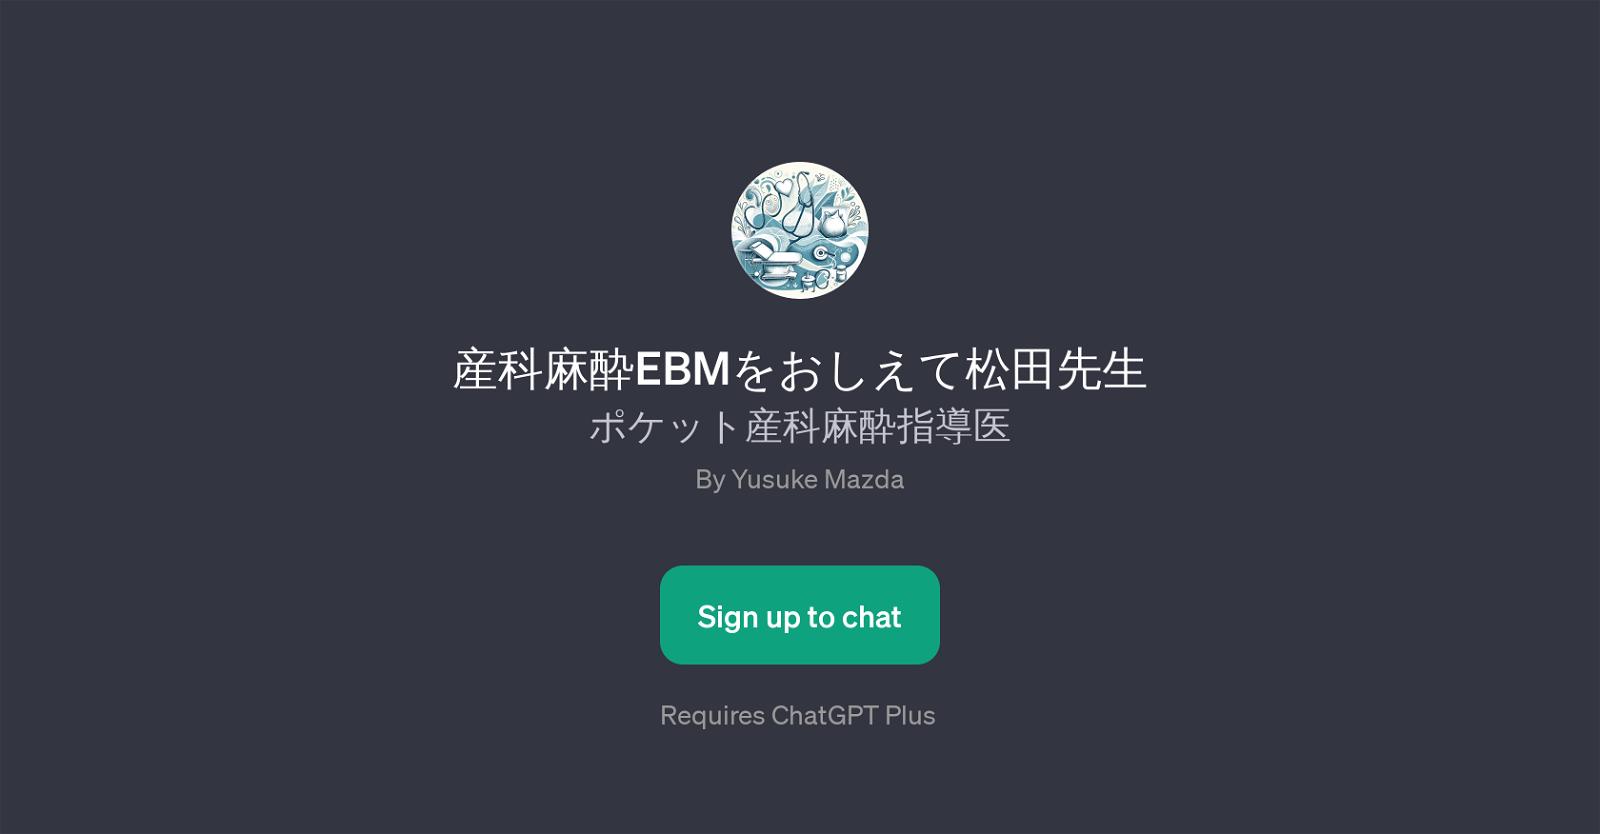 EBM website